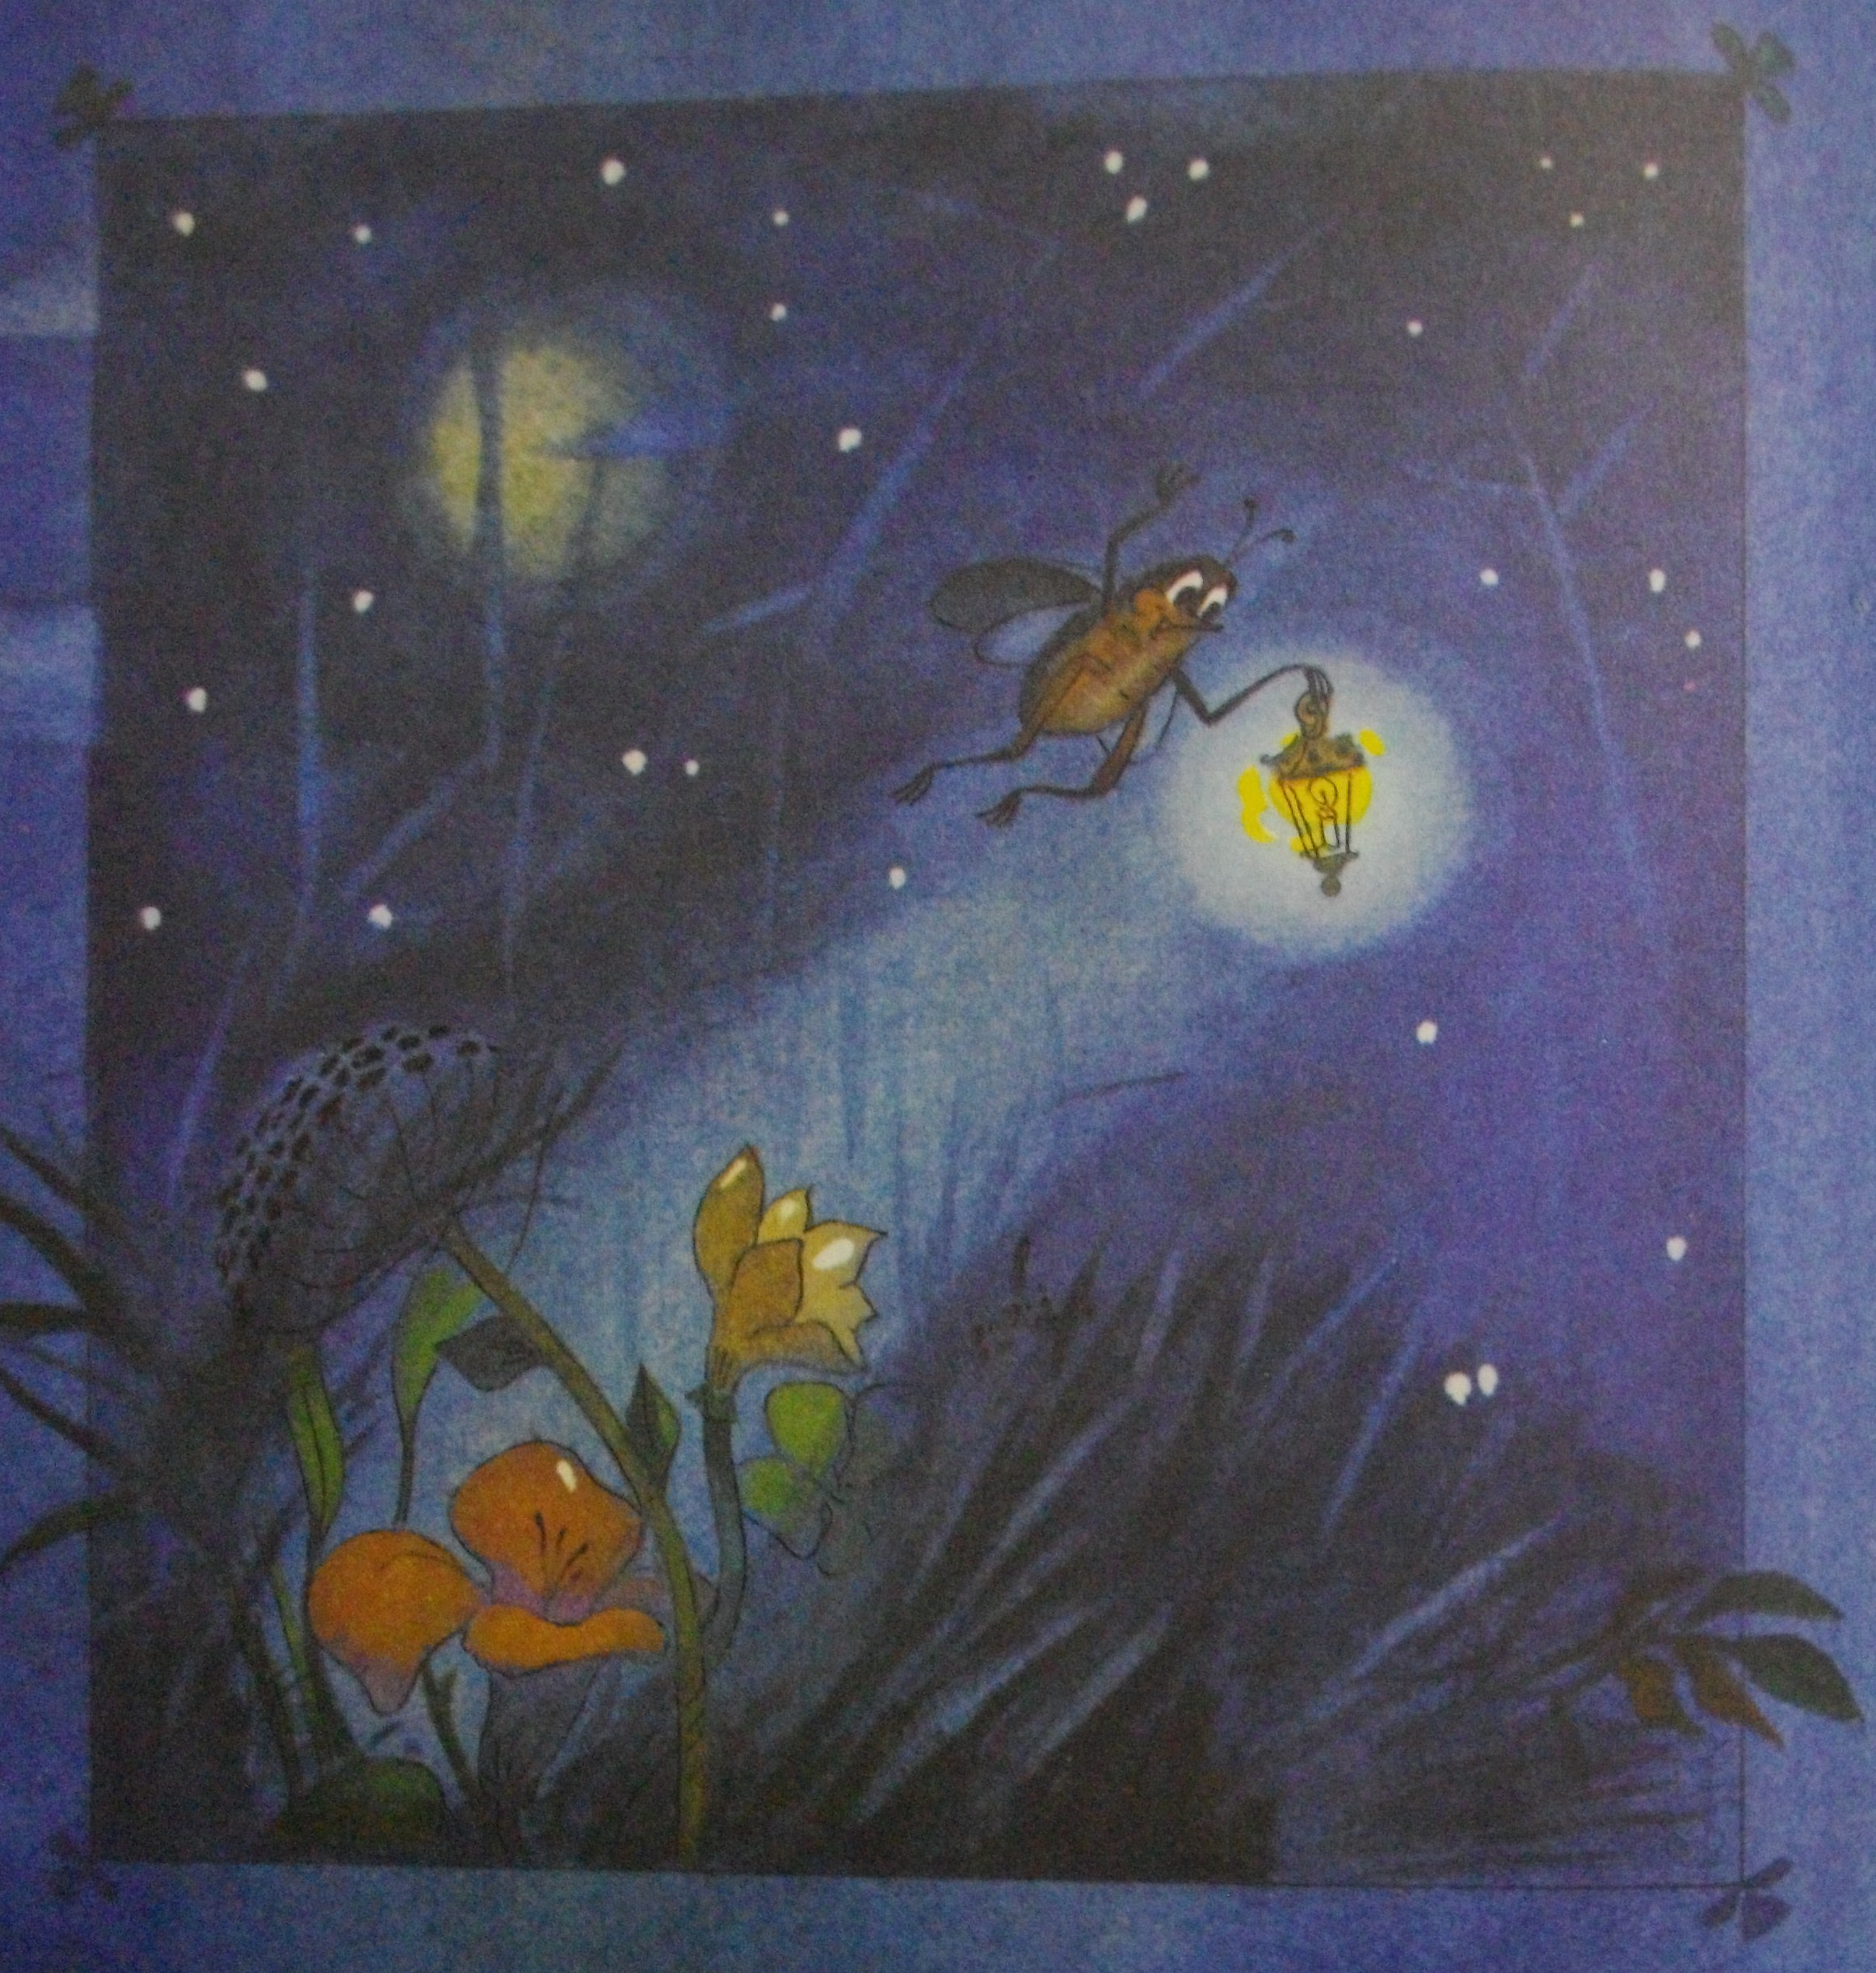 Светлячок со своим голубым фонариком летает над травой и ищет друга